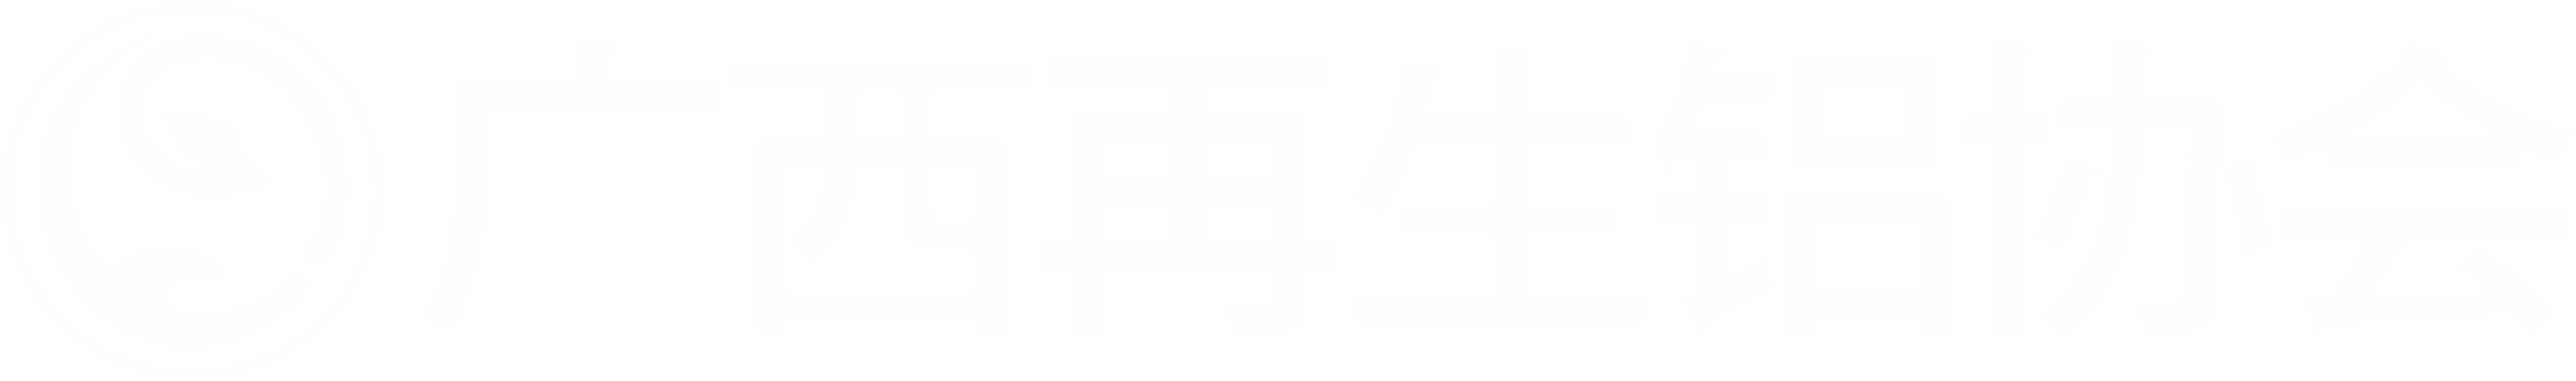 廣西再生鋁協會(huì)文化背景牆